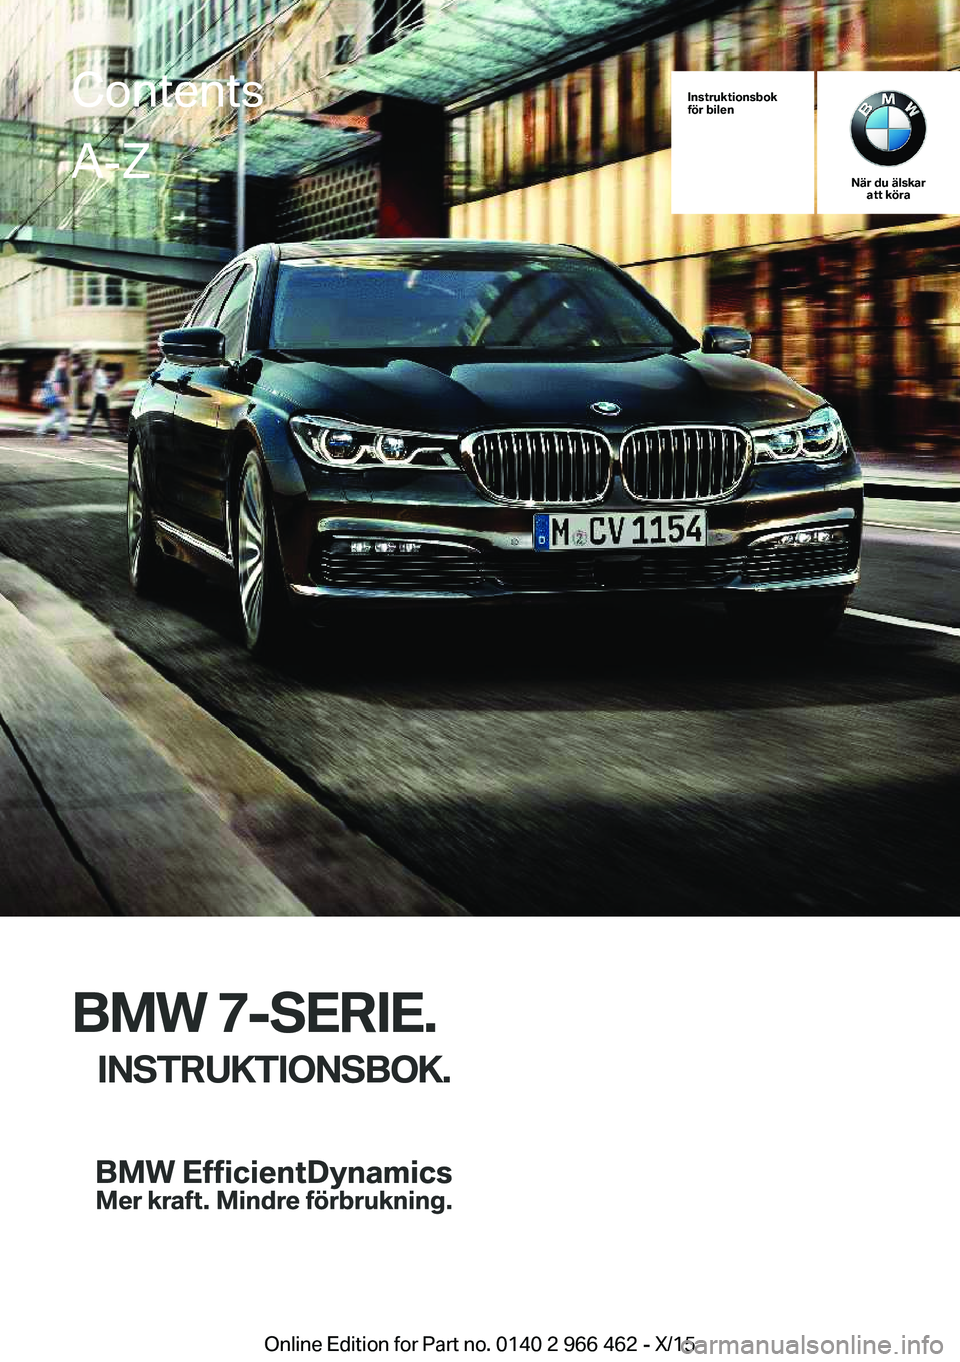 BMW 7 SERIES 2016  InstruktionsbÖcker (in Swedish) Instruktionsbok
för bilen
När du älskar att köra
BMW 7-SERIE.
INSTRUKTIONSBOK.
ContentsA-Z
Online Edition for Part no. 0140 2 966 462 - X/15   